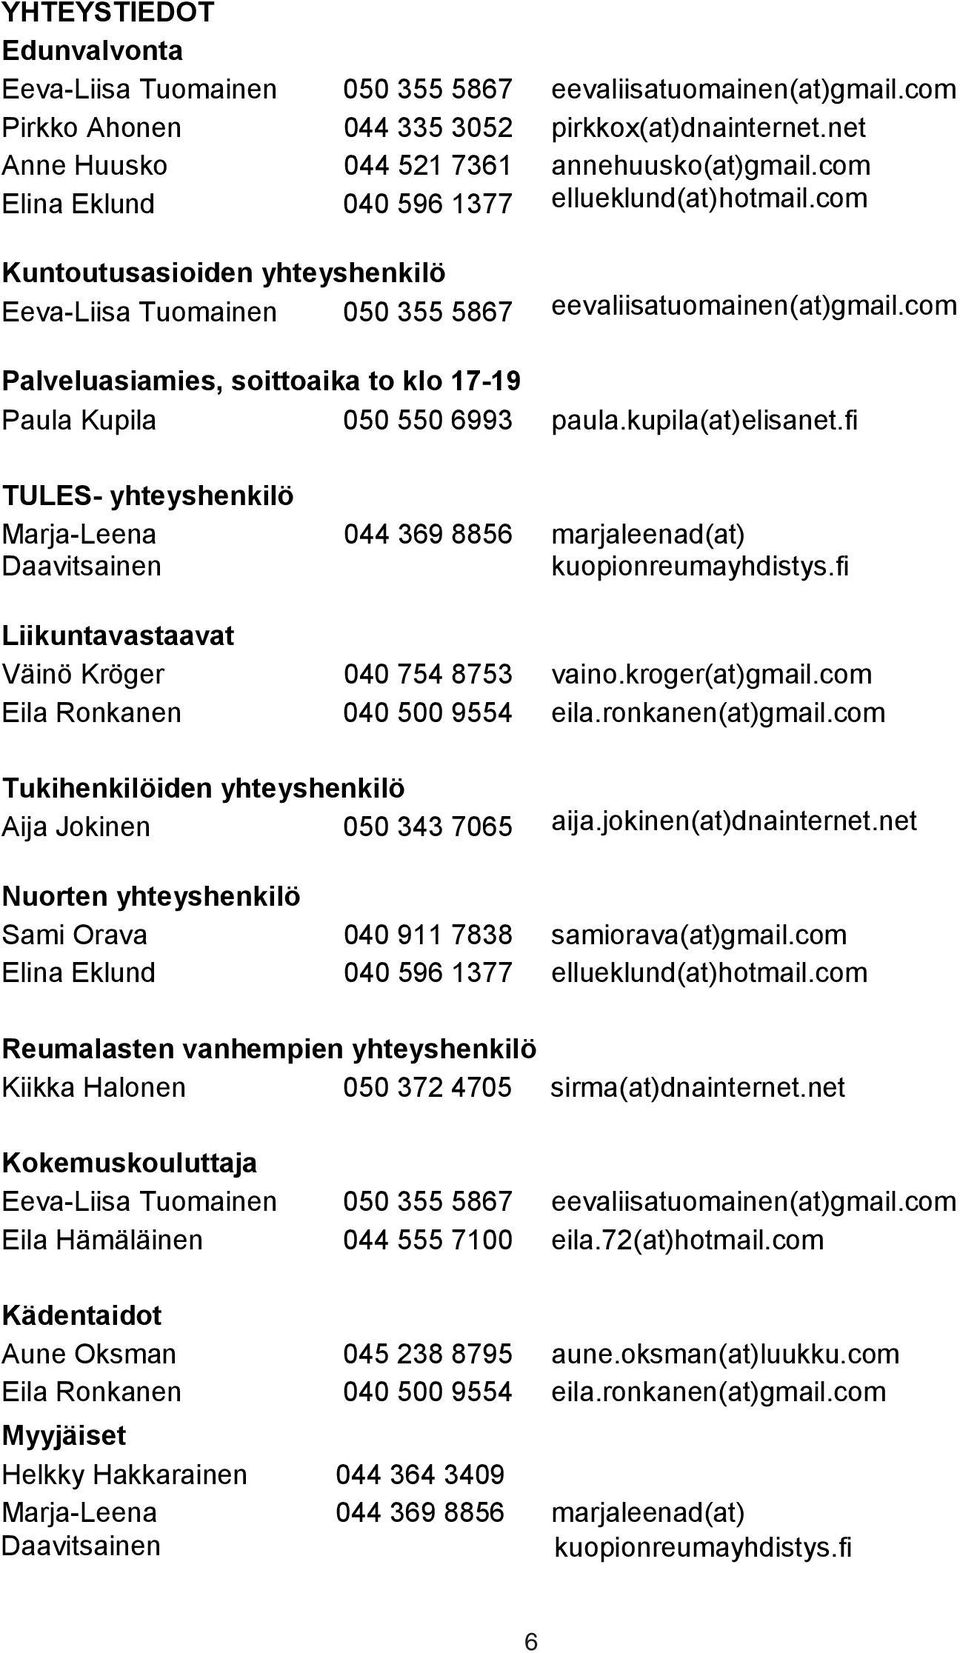 com Palveluasiamies, soittoaika to klo 17-19 Paula Kupila 050 550 6993 paula.kupila(at)elisanet.fi TULES- yhteyshenkilö Marja-Leena Daavitsainen 044 369 8856 marjaleenad(at) kuopionreumayhdistys.